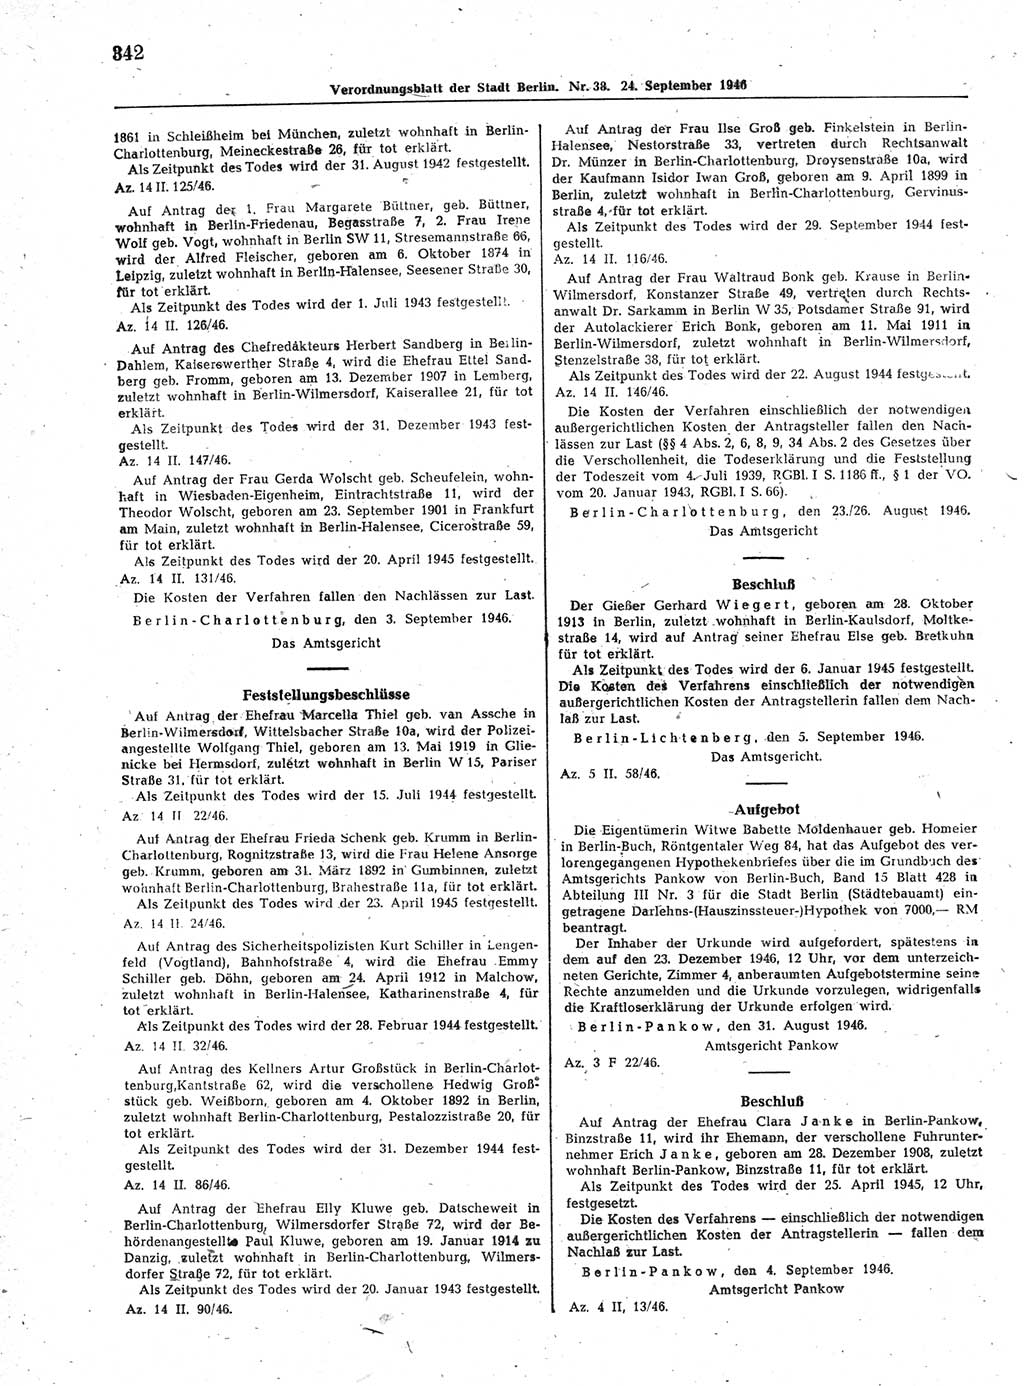 Verordnungsblatt (VOBl.) der Stadt Berlin, für Groß-Berlin 1946, Seite 342 (VOBl. Bln. 1946, S. 342)